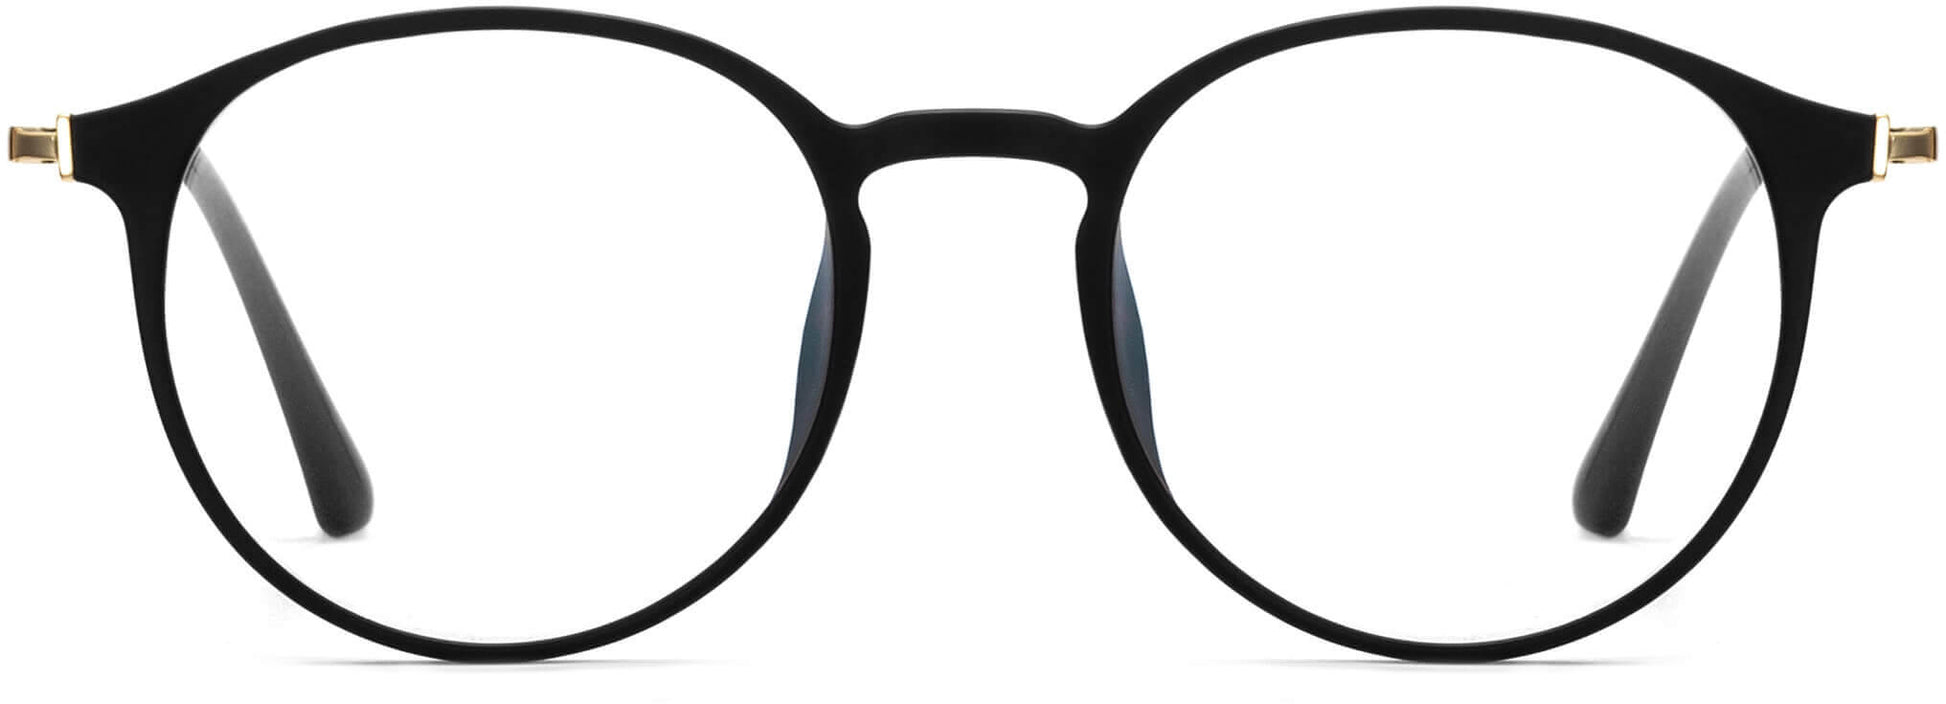 Gentry Black Metal Eyeglasses from ANRRI